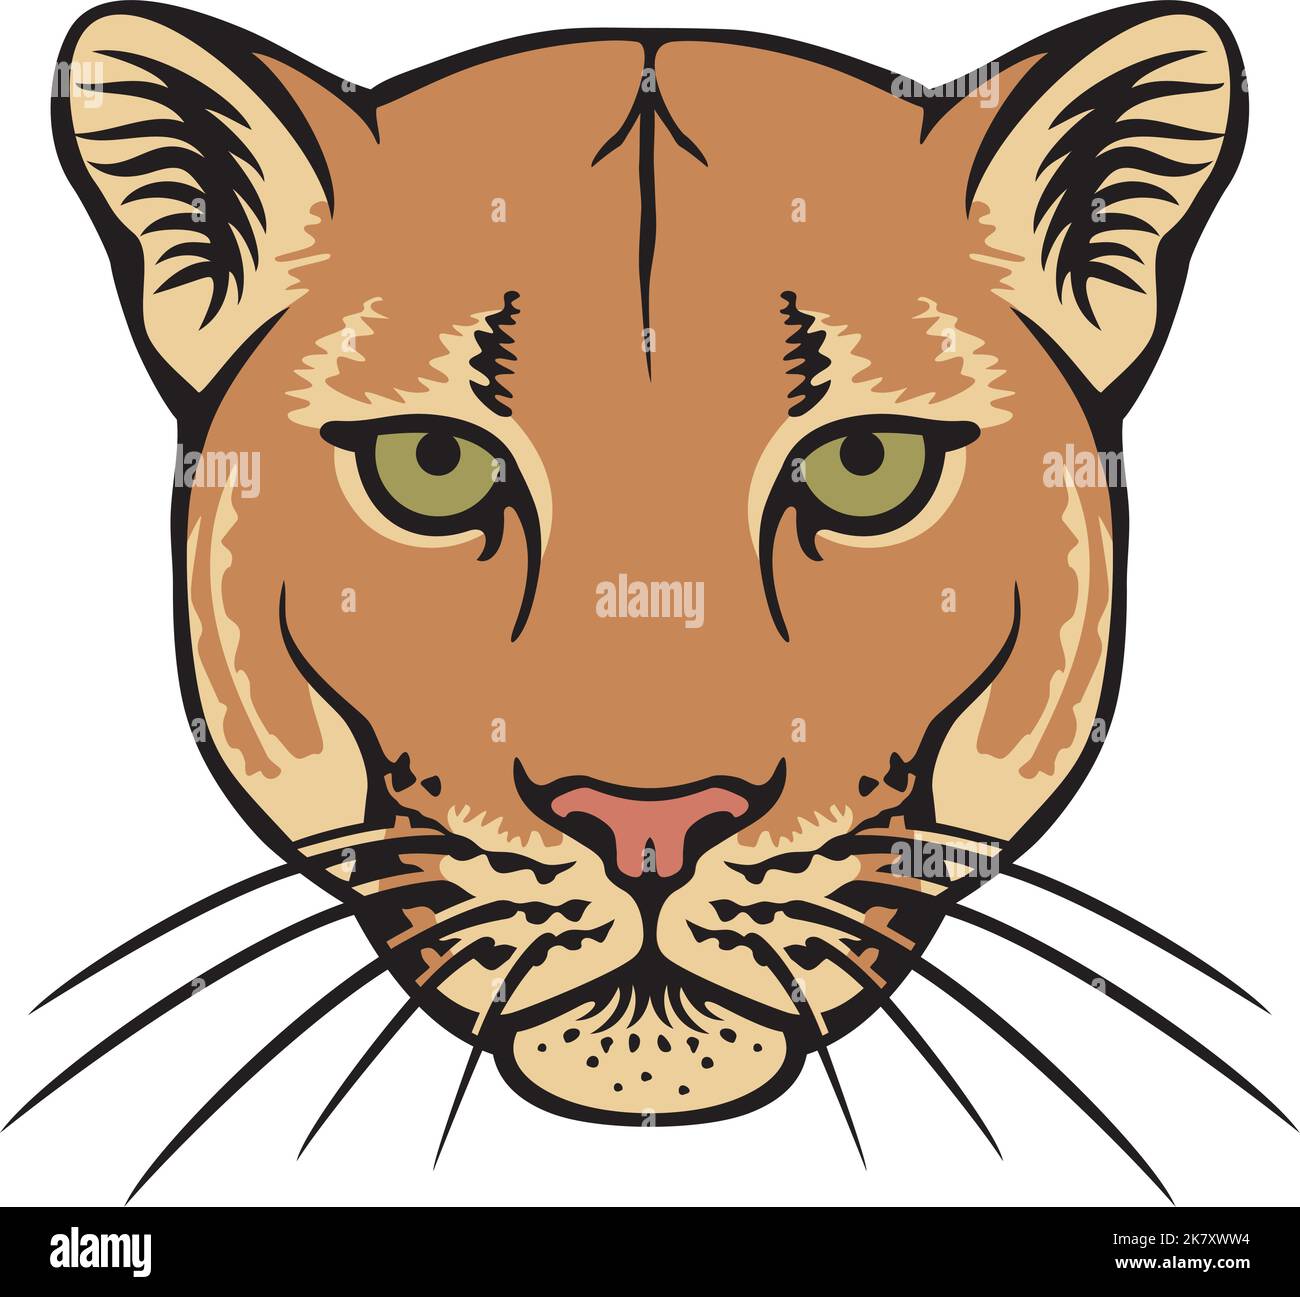 Abbildung Der Vektorgrafik Für Die Farbe Des Puma-Kopfes Stock Vektor